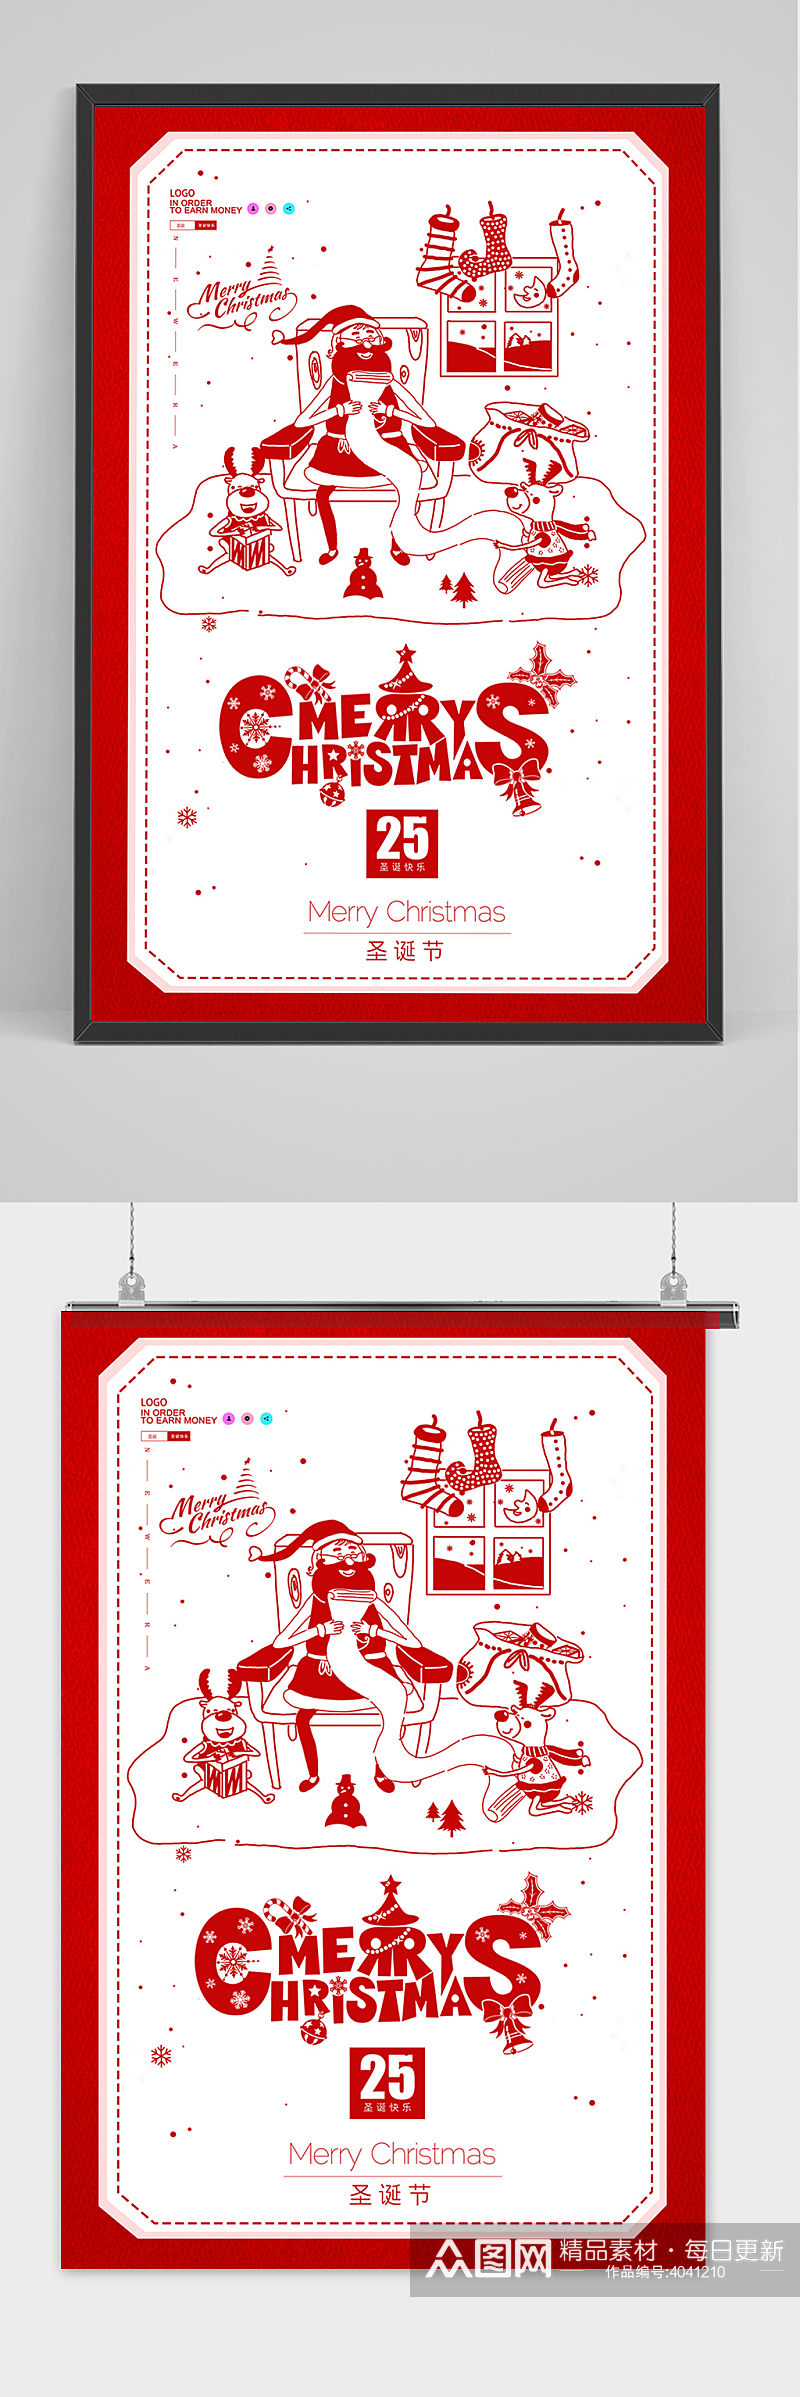 红色简约圣诞节海报设计素材